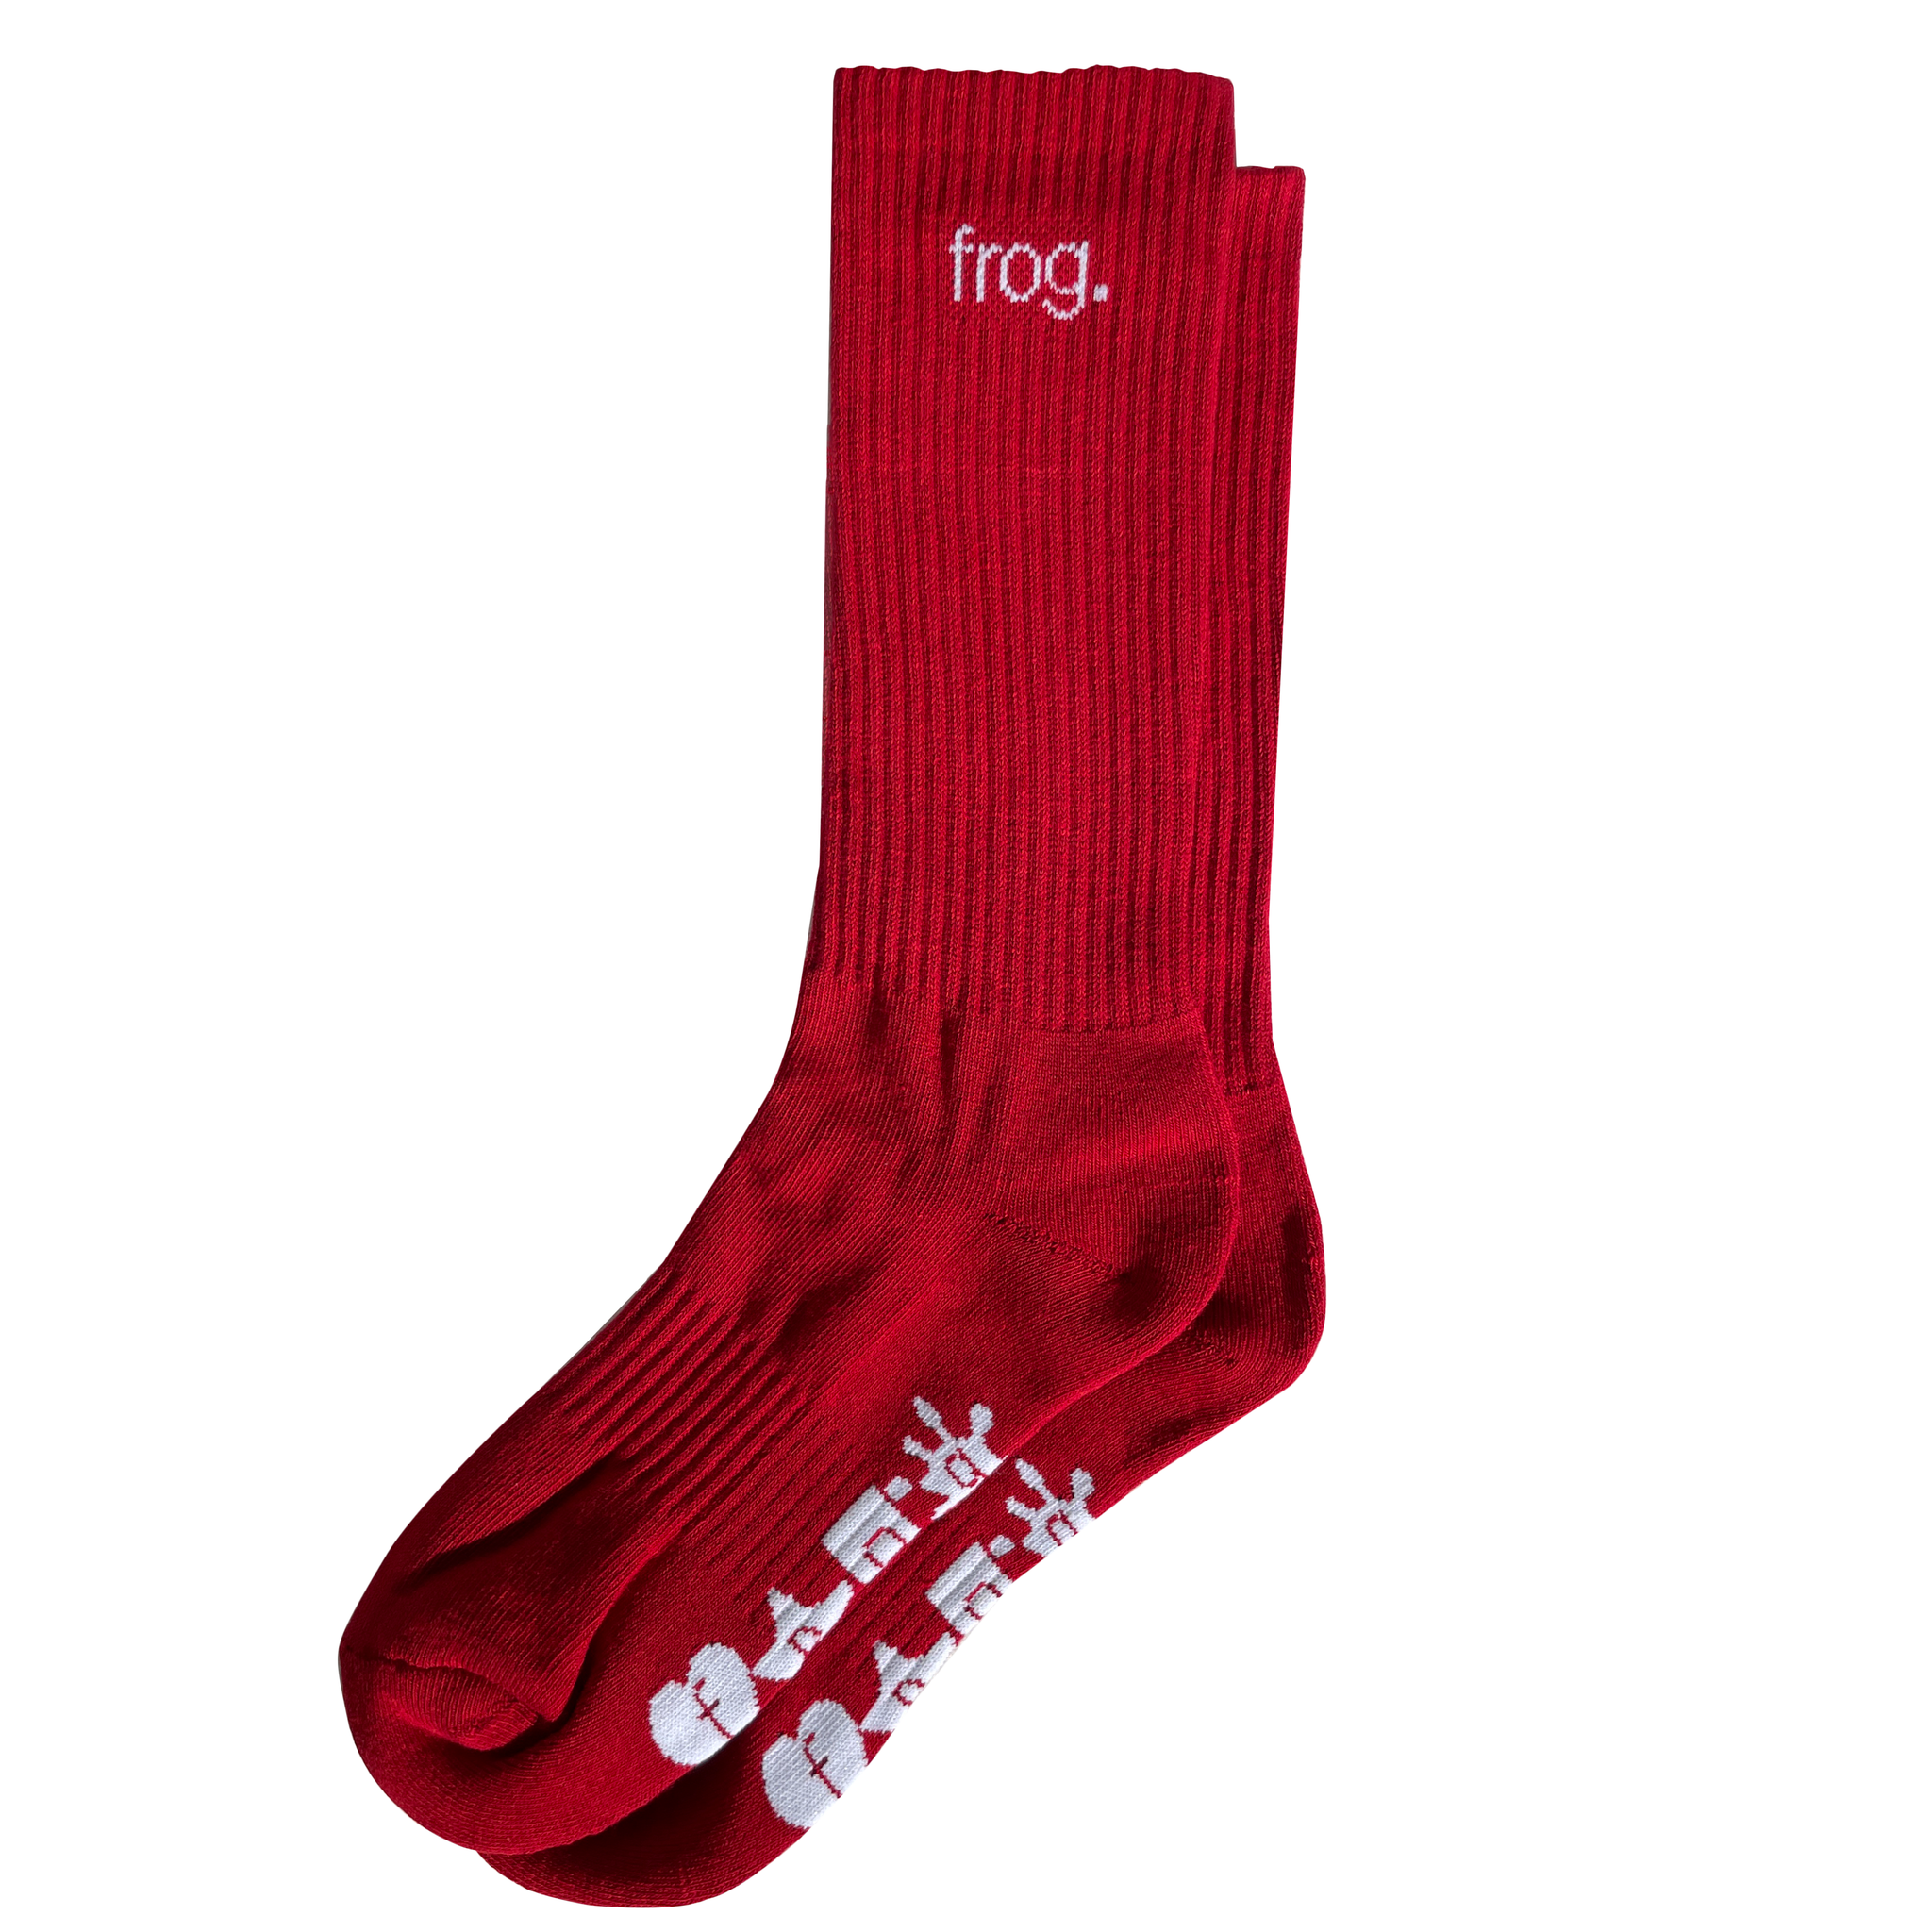 FROG SKATEBOARDS - Frog Socks "Dark Red"